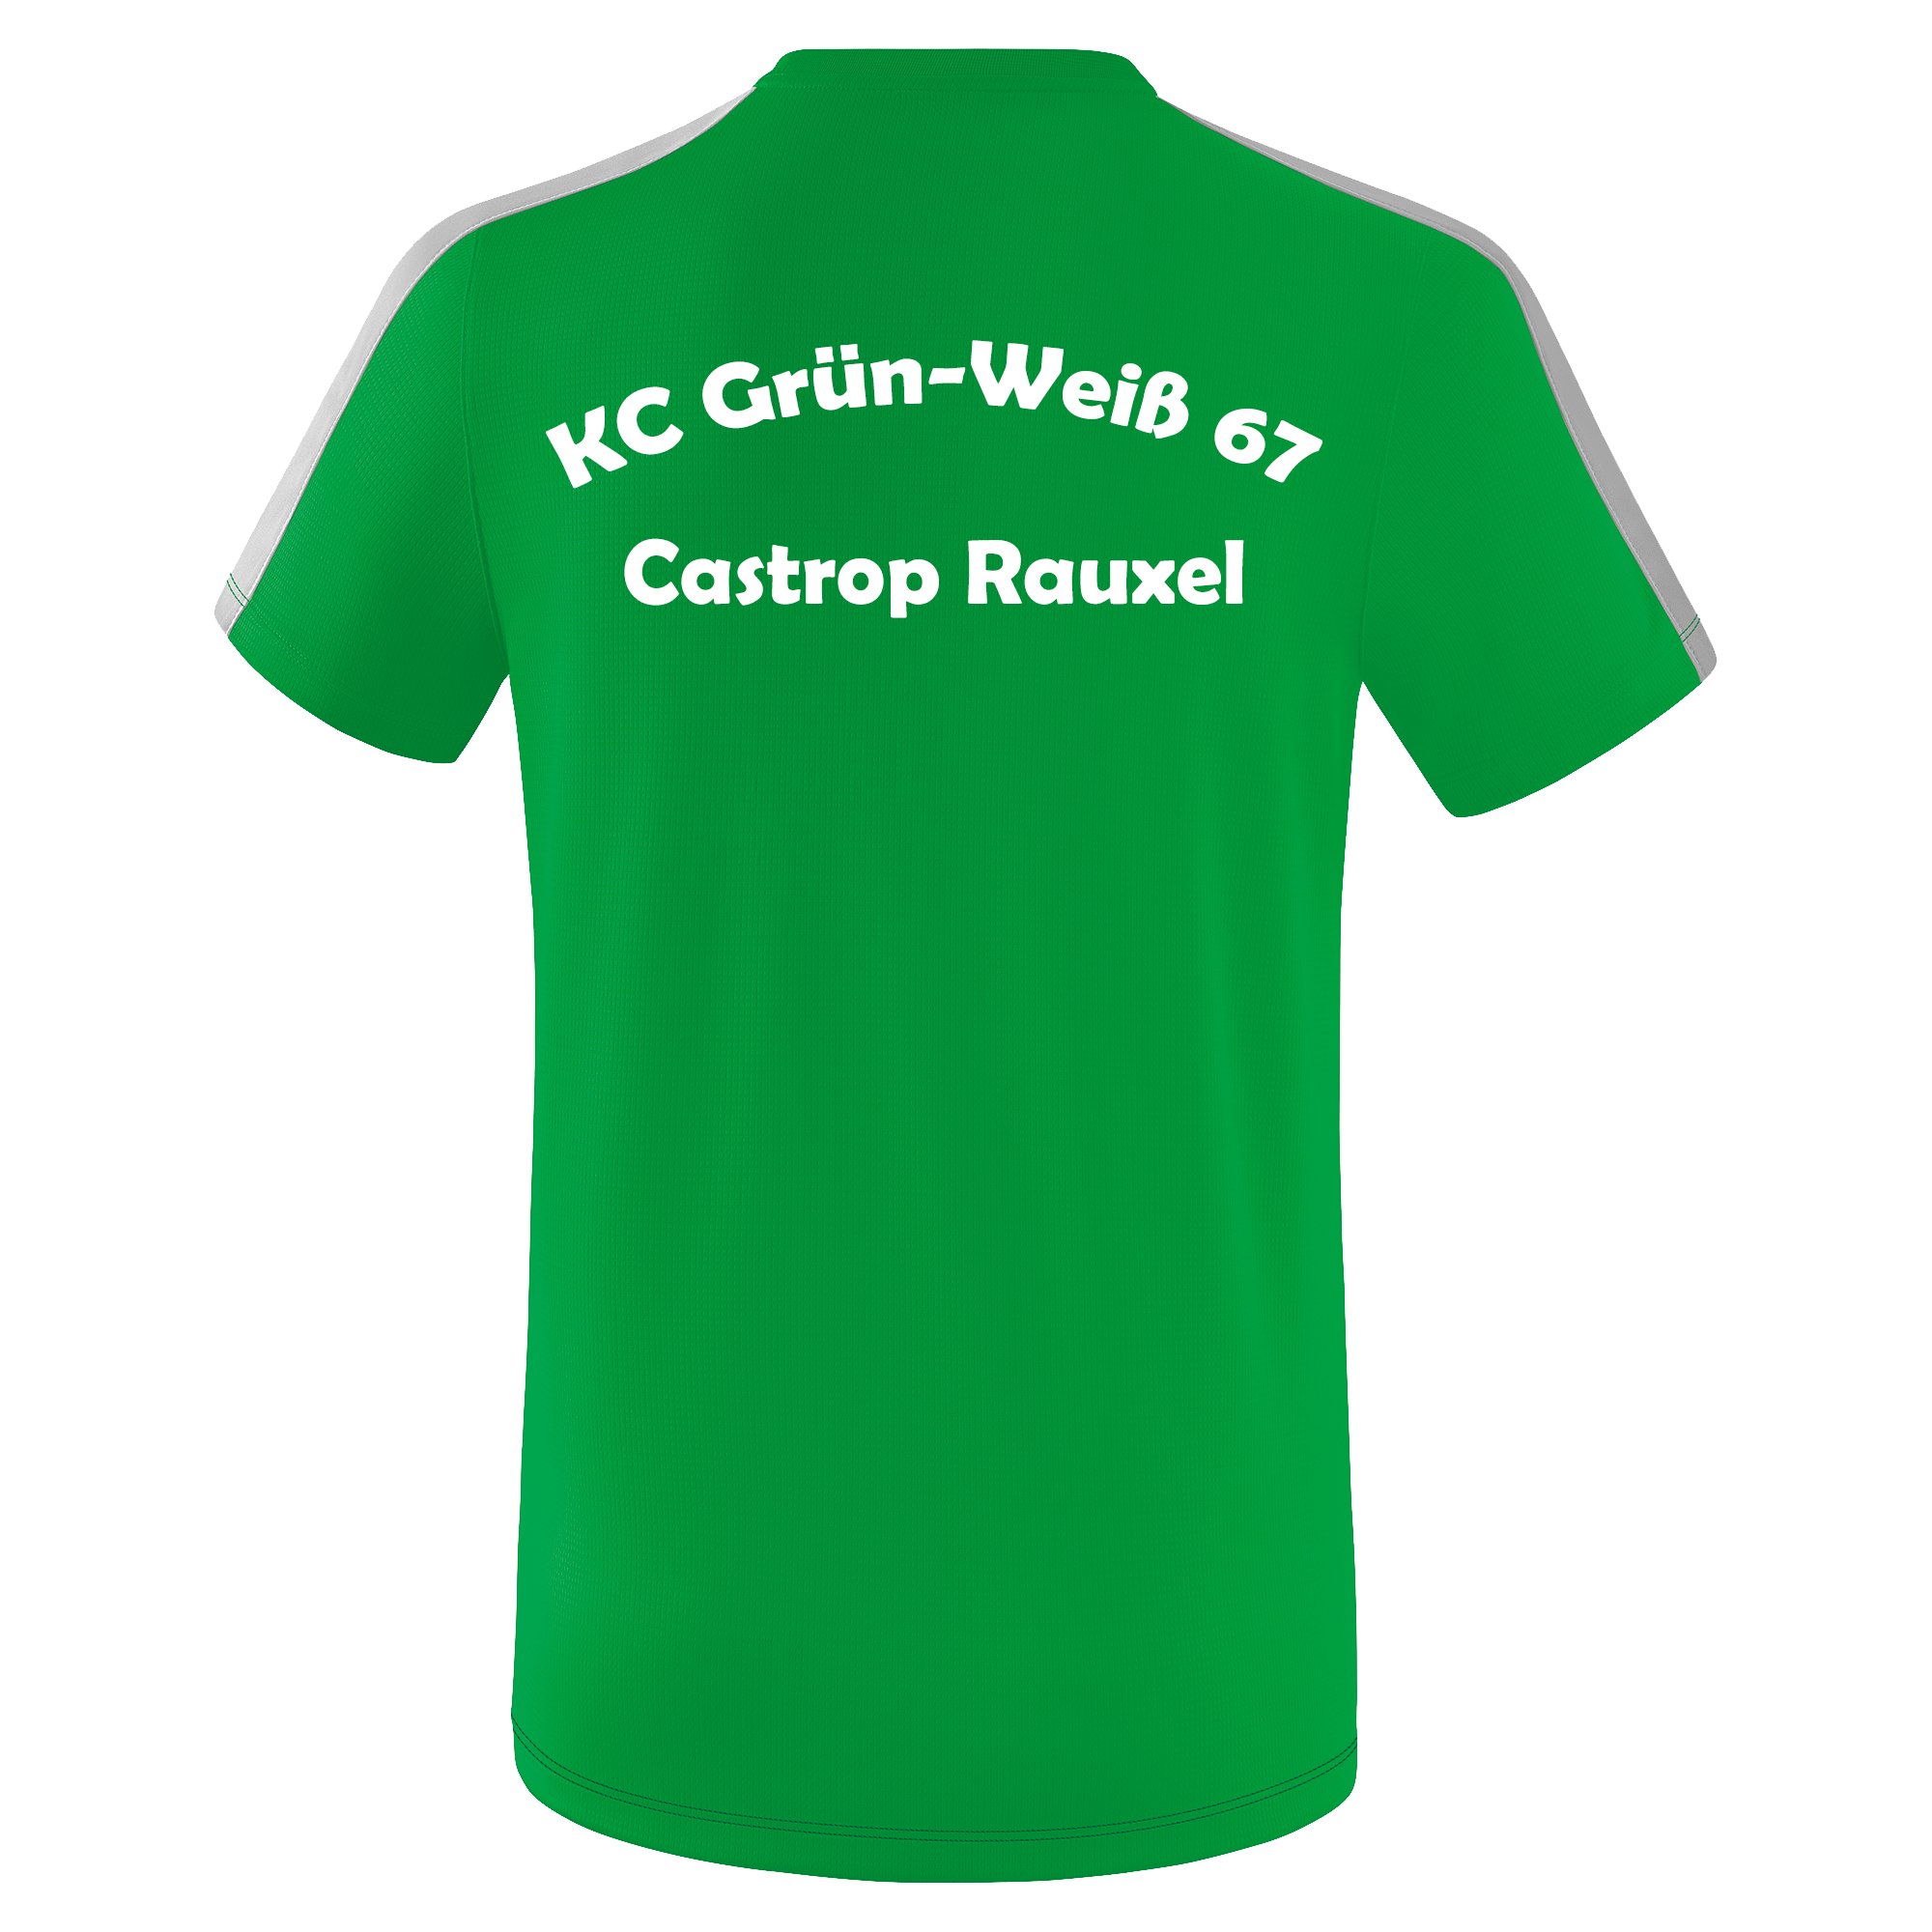 KC Grün Weiß 67 T-Shirt